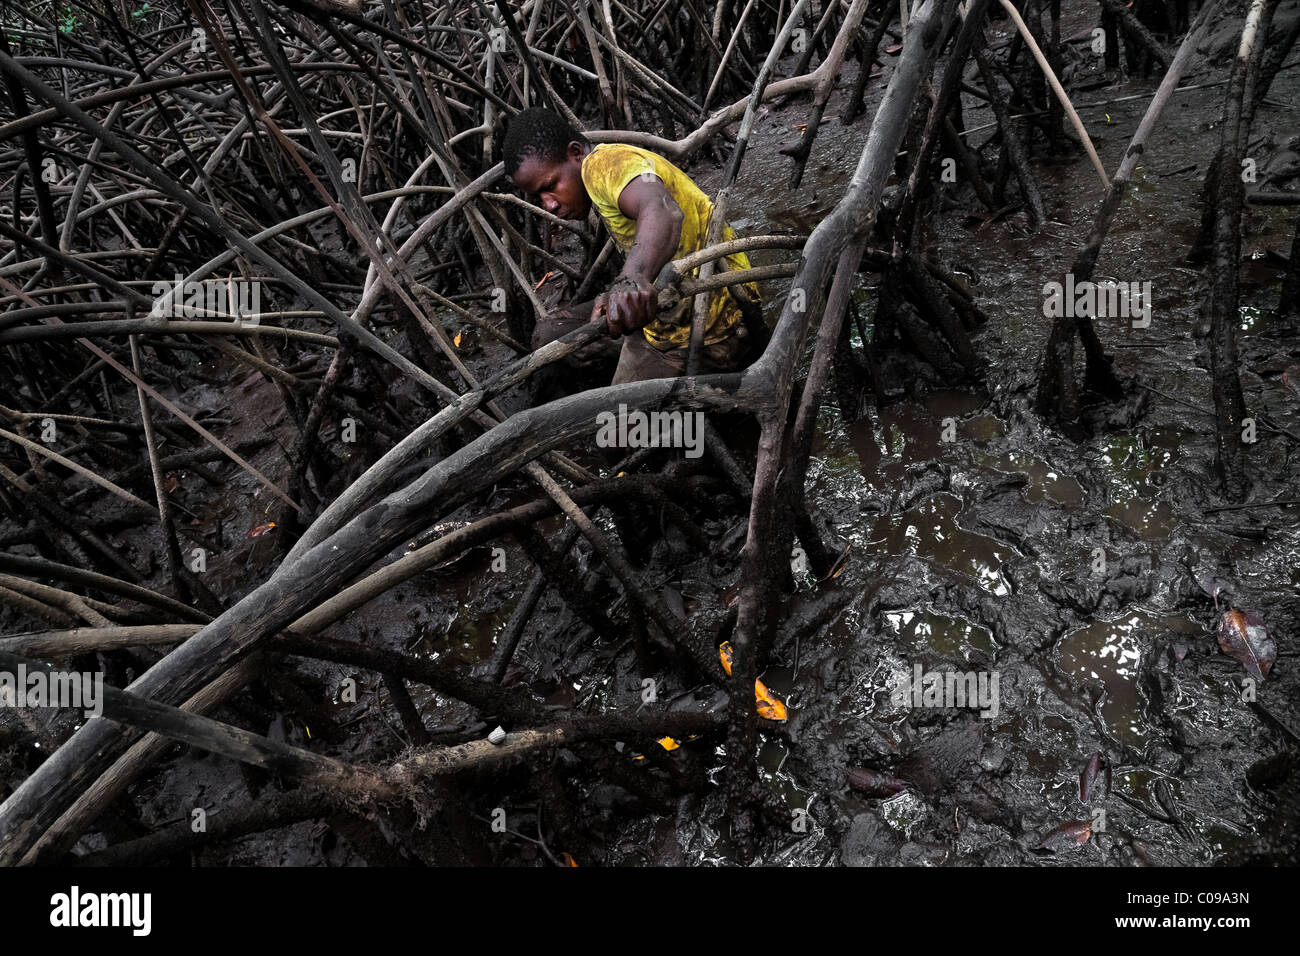 Ein kolumbianischer junge nimmt Schalentiere aus dem Schlamm unter Baumwurzeln in die Mangrovensümpfe an der Pazifikküste, Kolumbien. Stockfoto